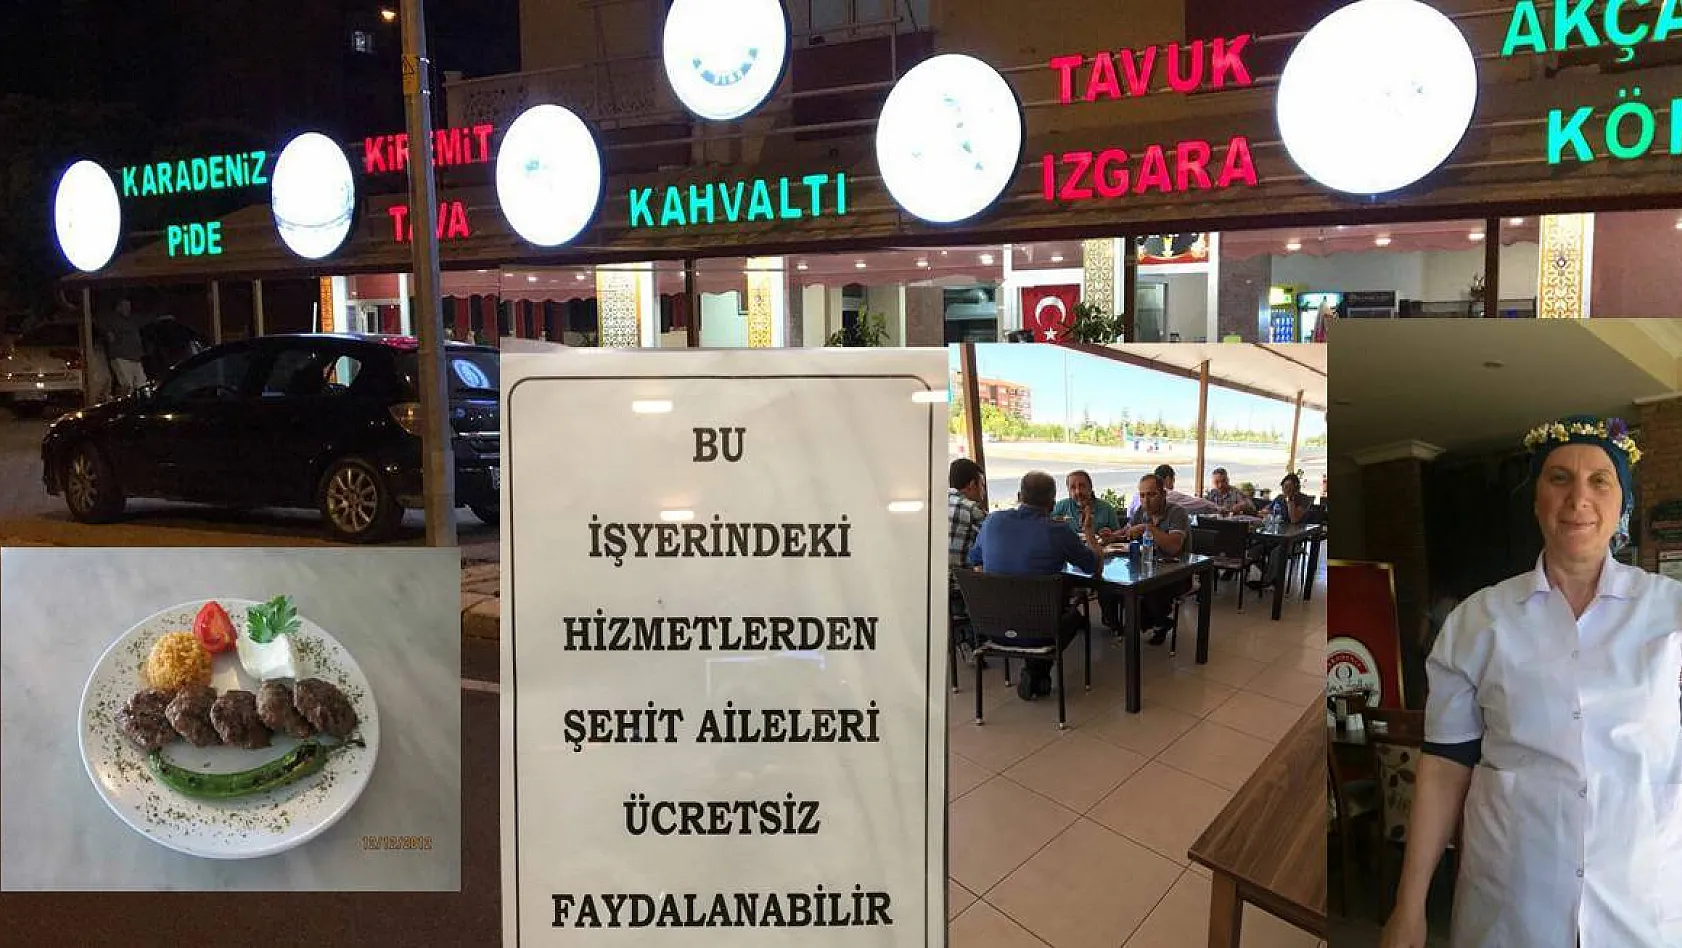  Selma Sultan Karadeniz Pidecisi Kayserilileri bekliyor!